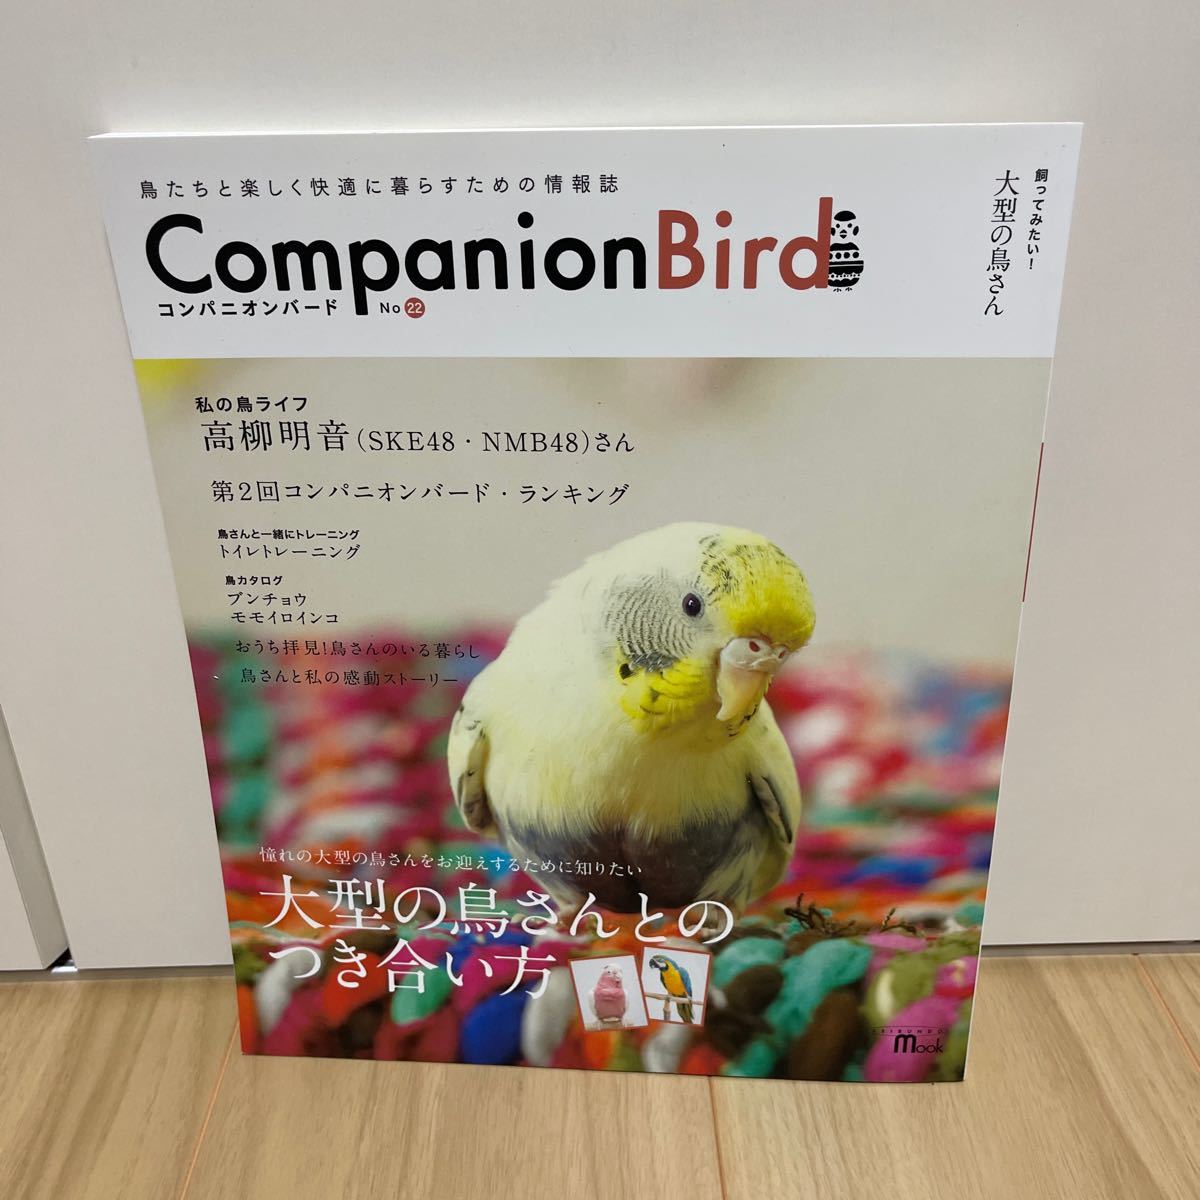  быстрое решение Companion Bird сопровождение bird No.22 документ птица bnchou Momo iro длиннохвостый попугай высота . Akira звук попугай темно синий go длиннохвостый попугай 